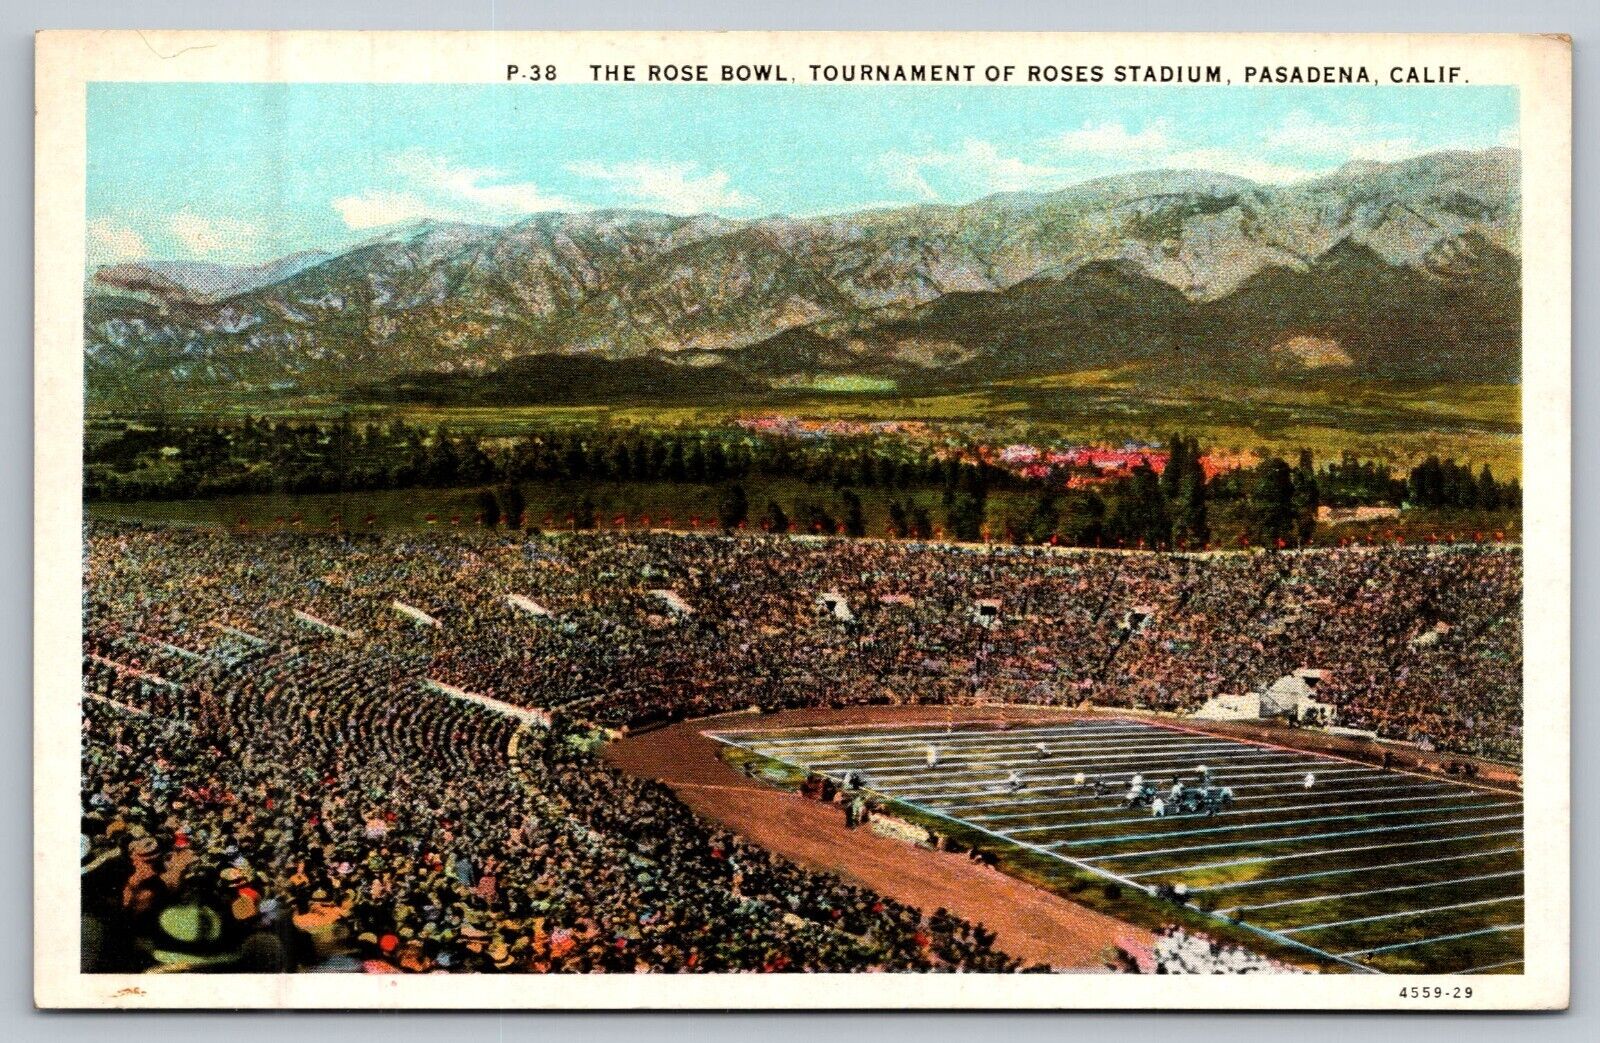 1935 The Rose Bowl, Pasadena, California Football Tournament Stadium Postcard